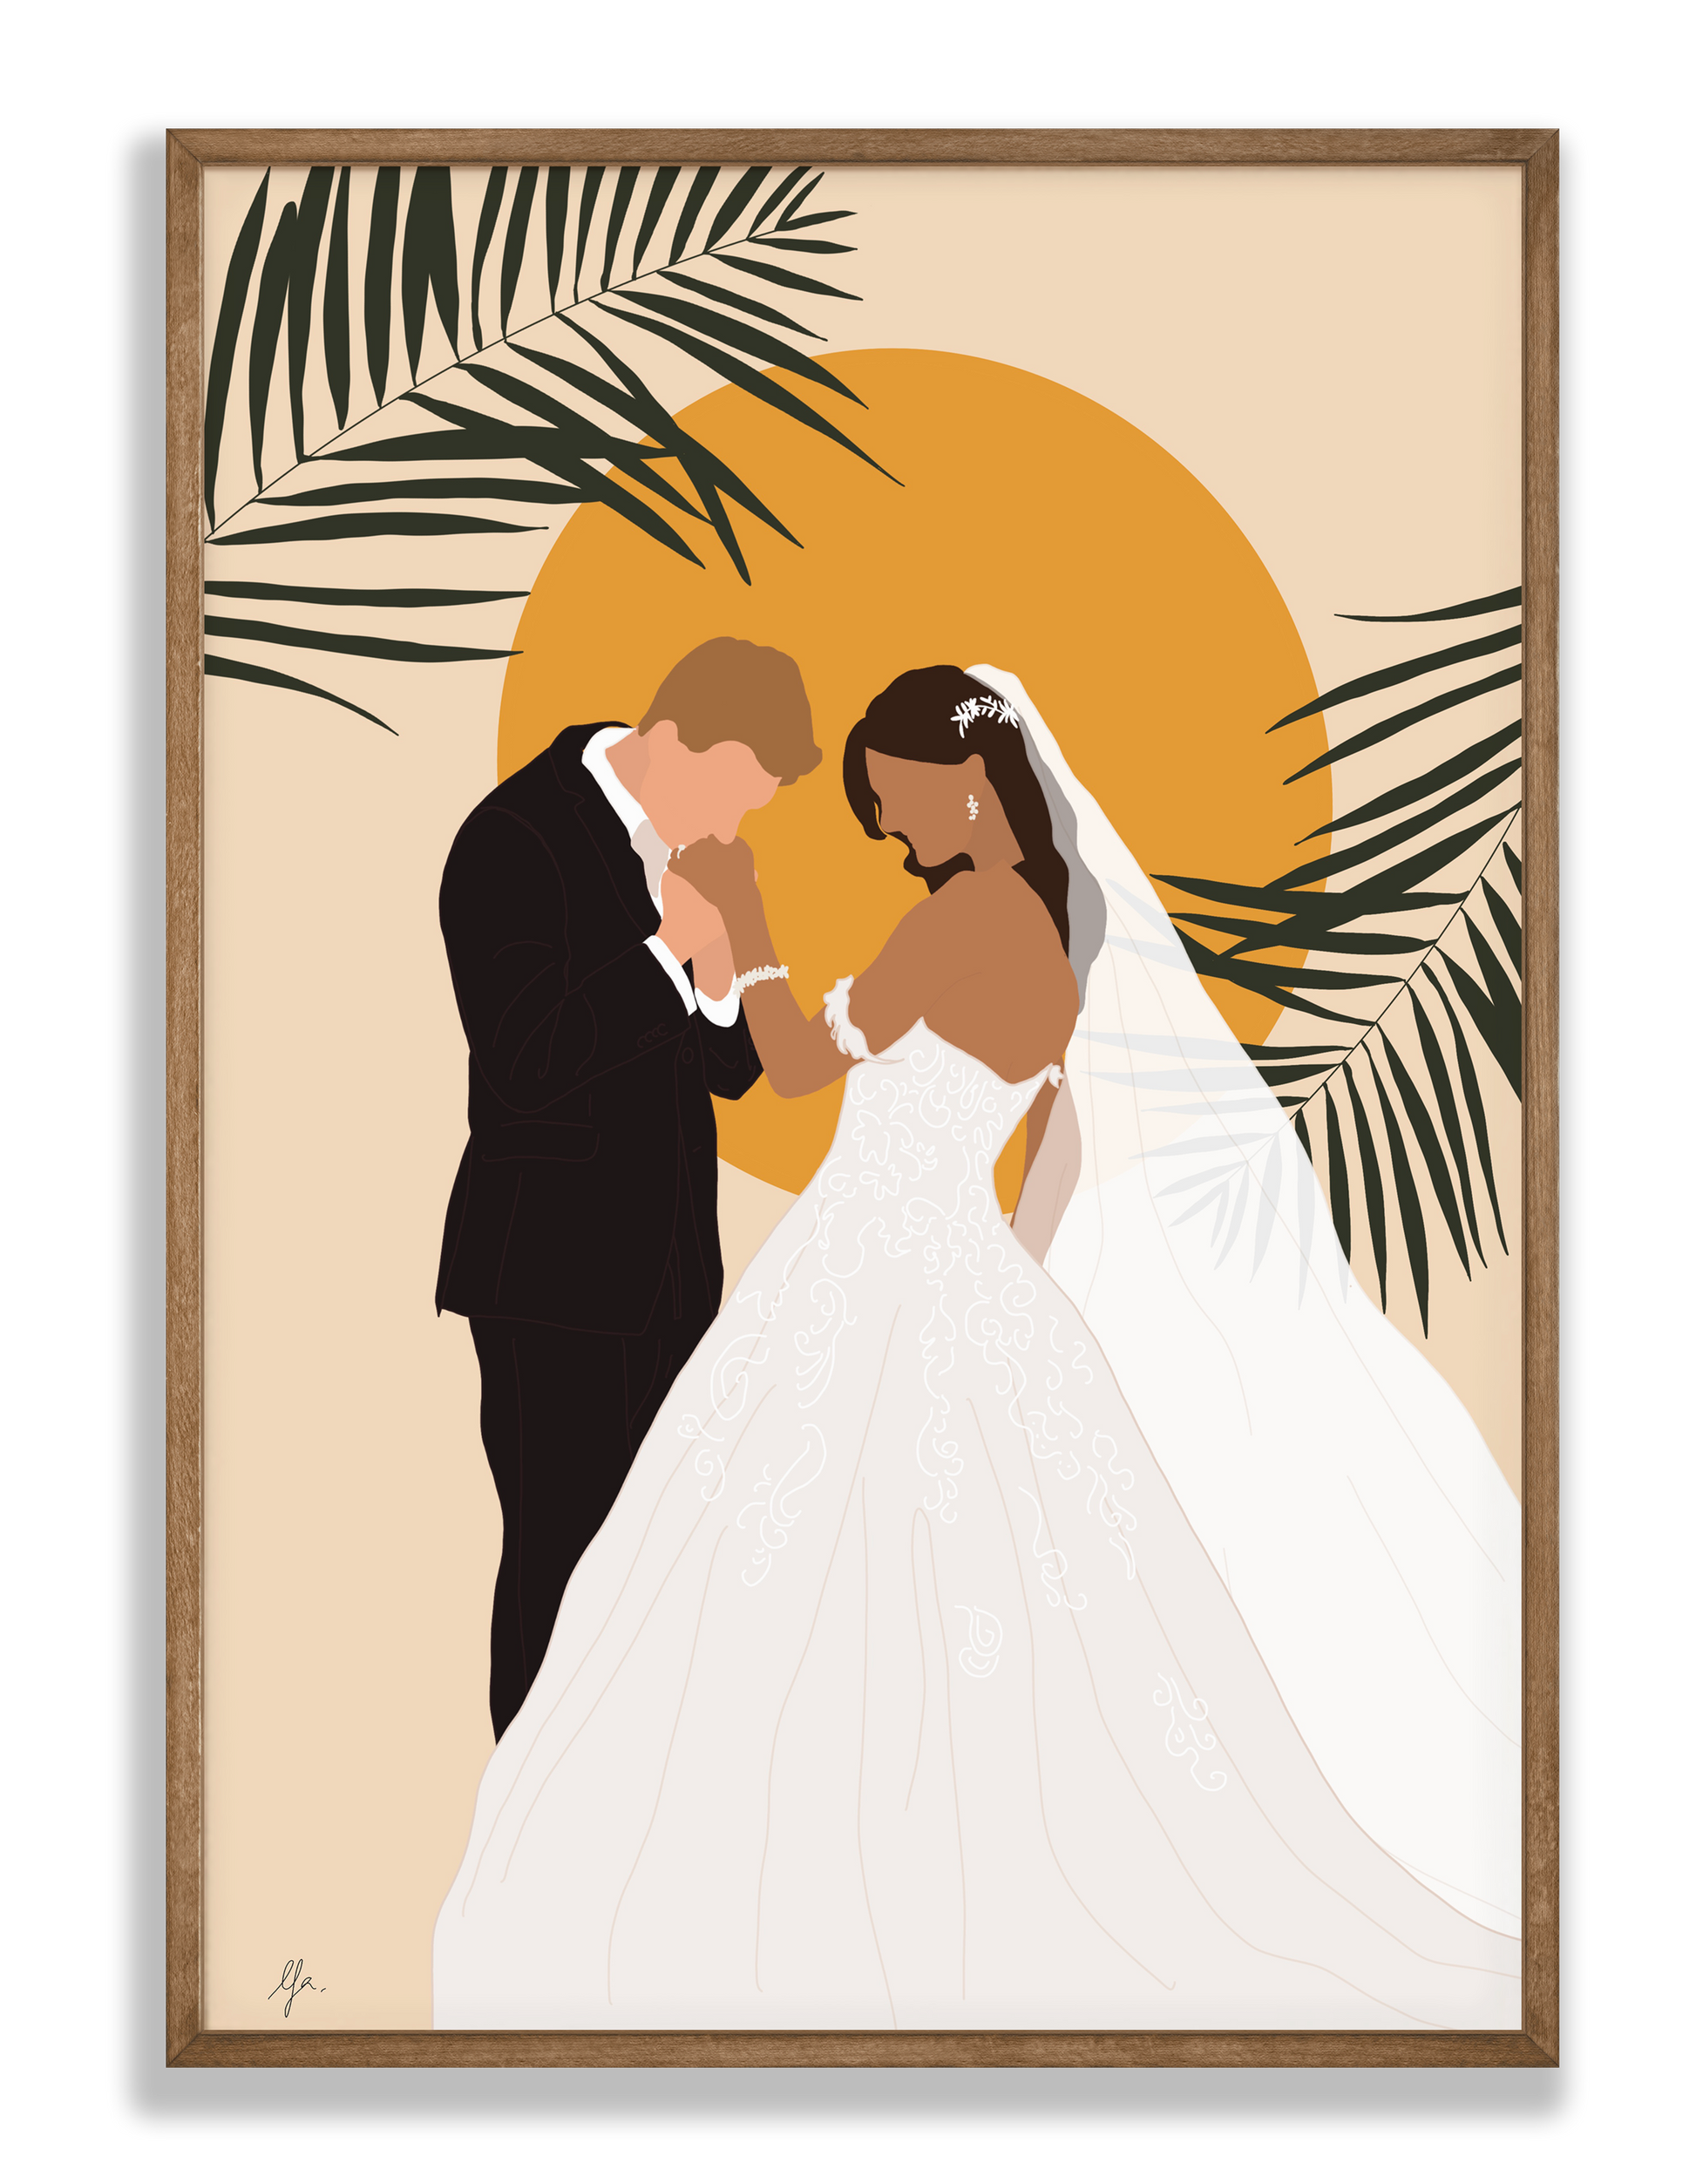 Affiche personnalisée du mariage d'un couple.